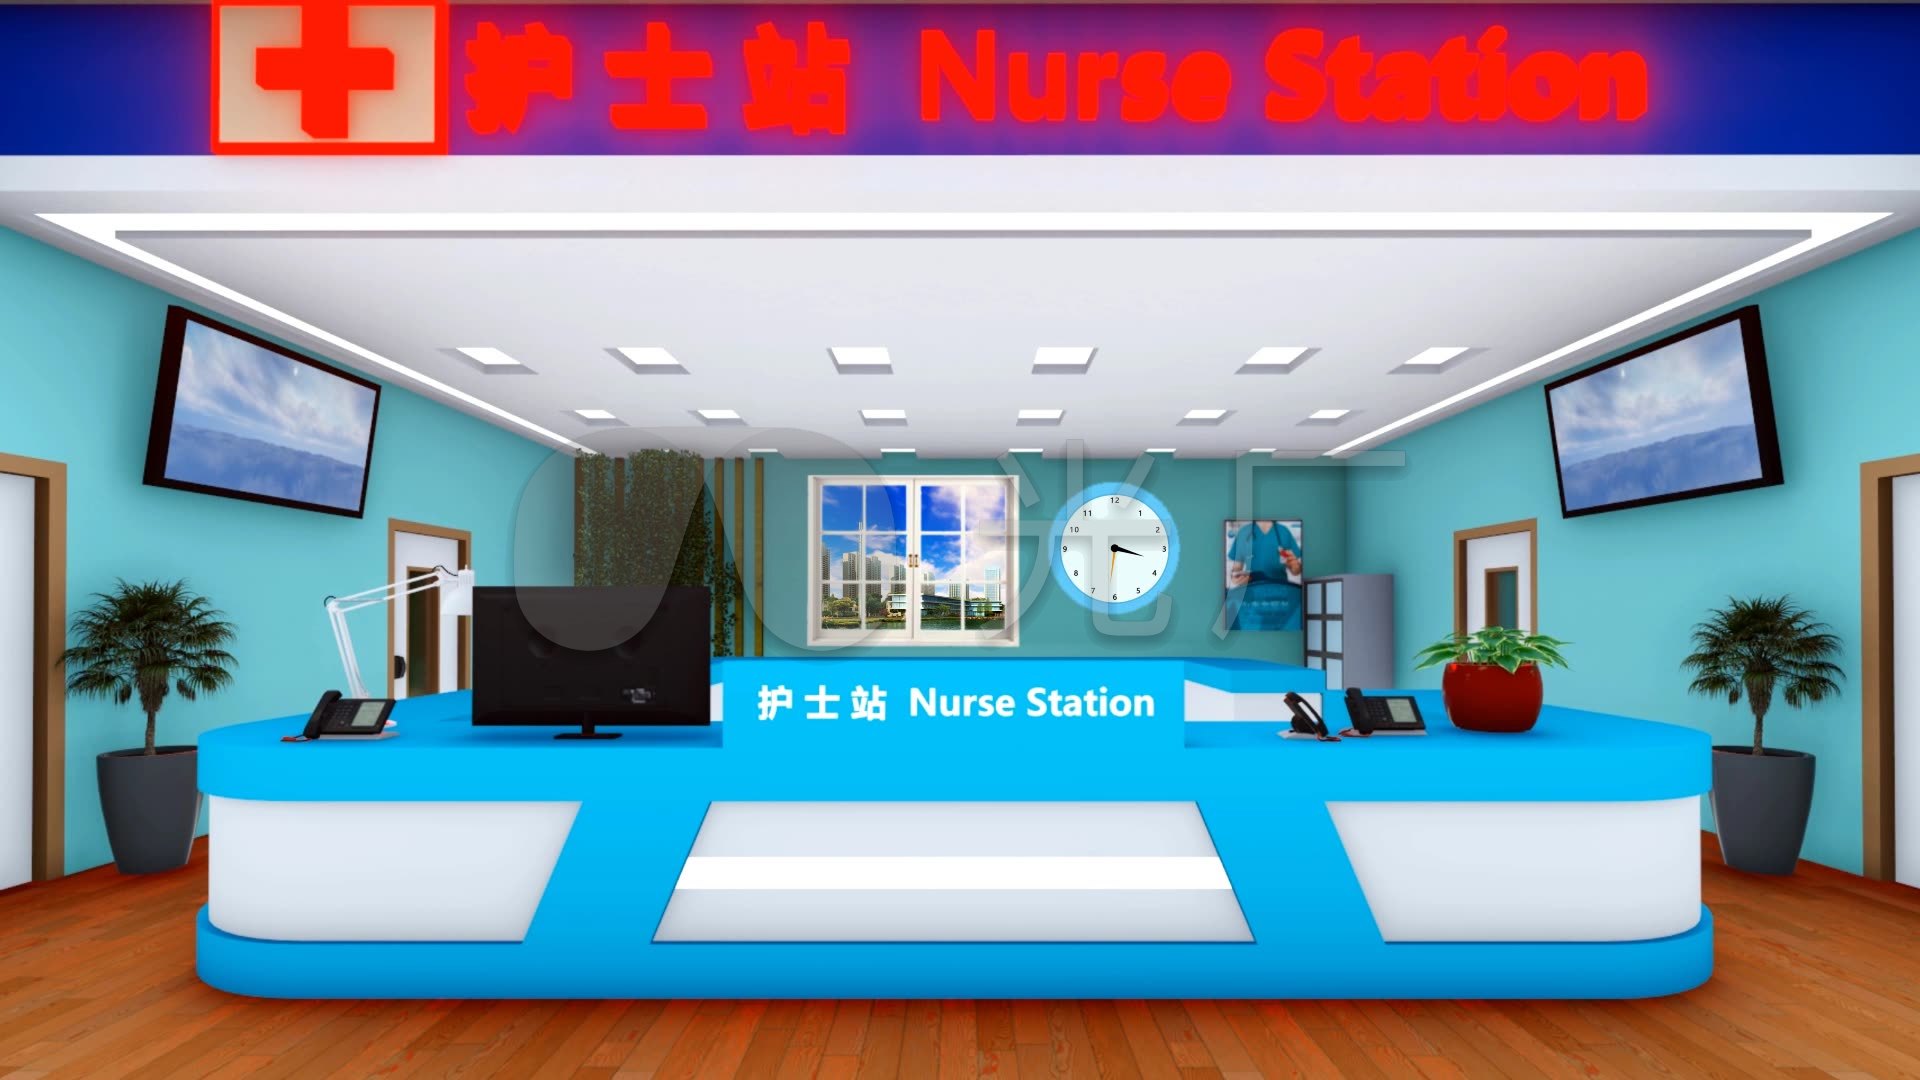 深圳：女护士出电梯遭遇急坠 头被夹断当场身亡_幻灯图集_图片频道_MSN中国